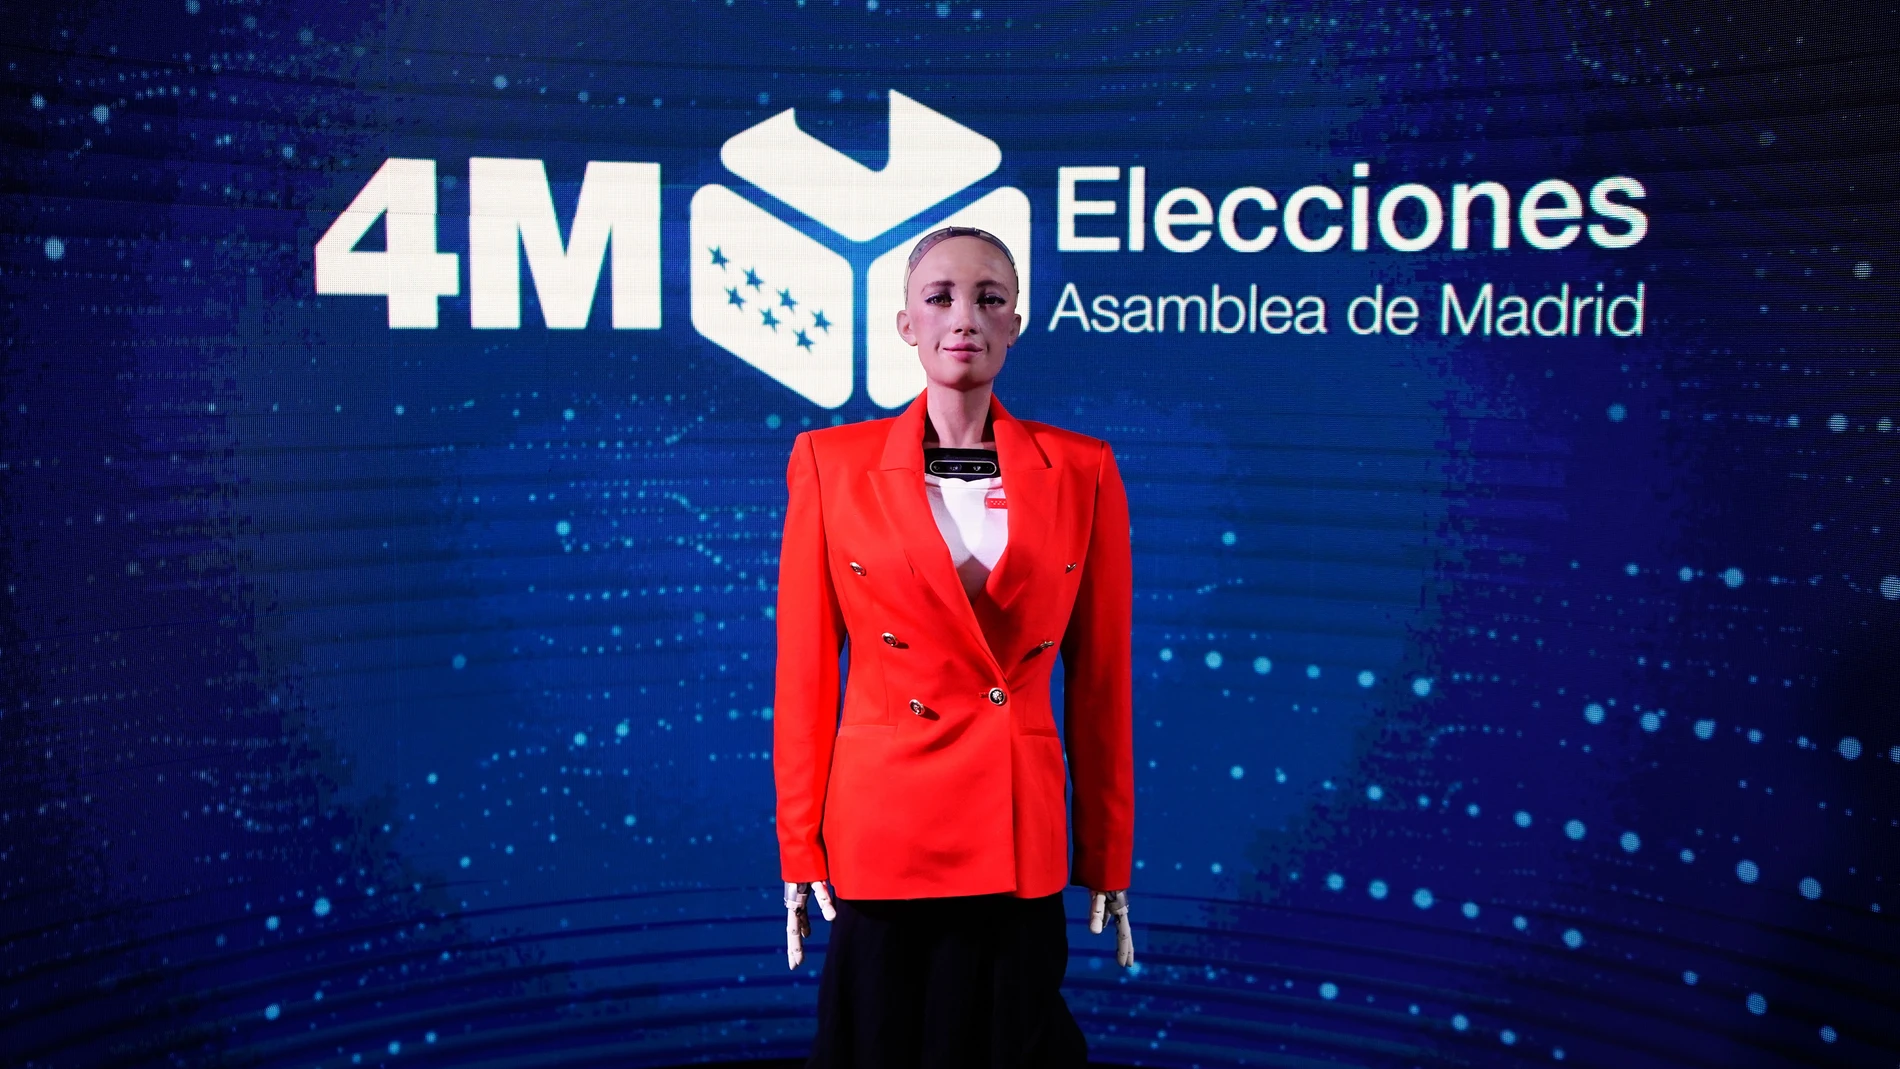 La Comunidad de Madrid aplica la inteligencia artificial por primera vez en un proceso electoral a través del robot Sophia